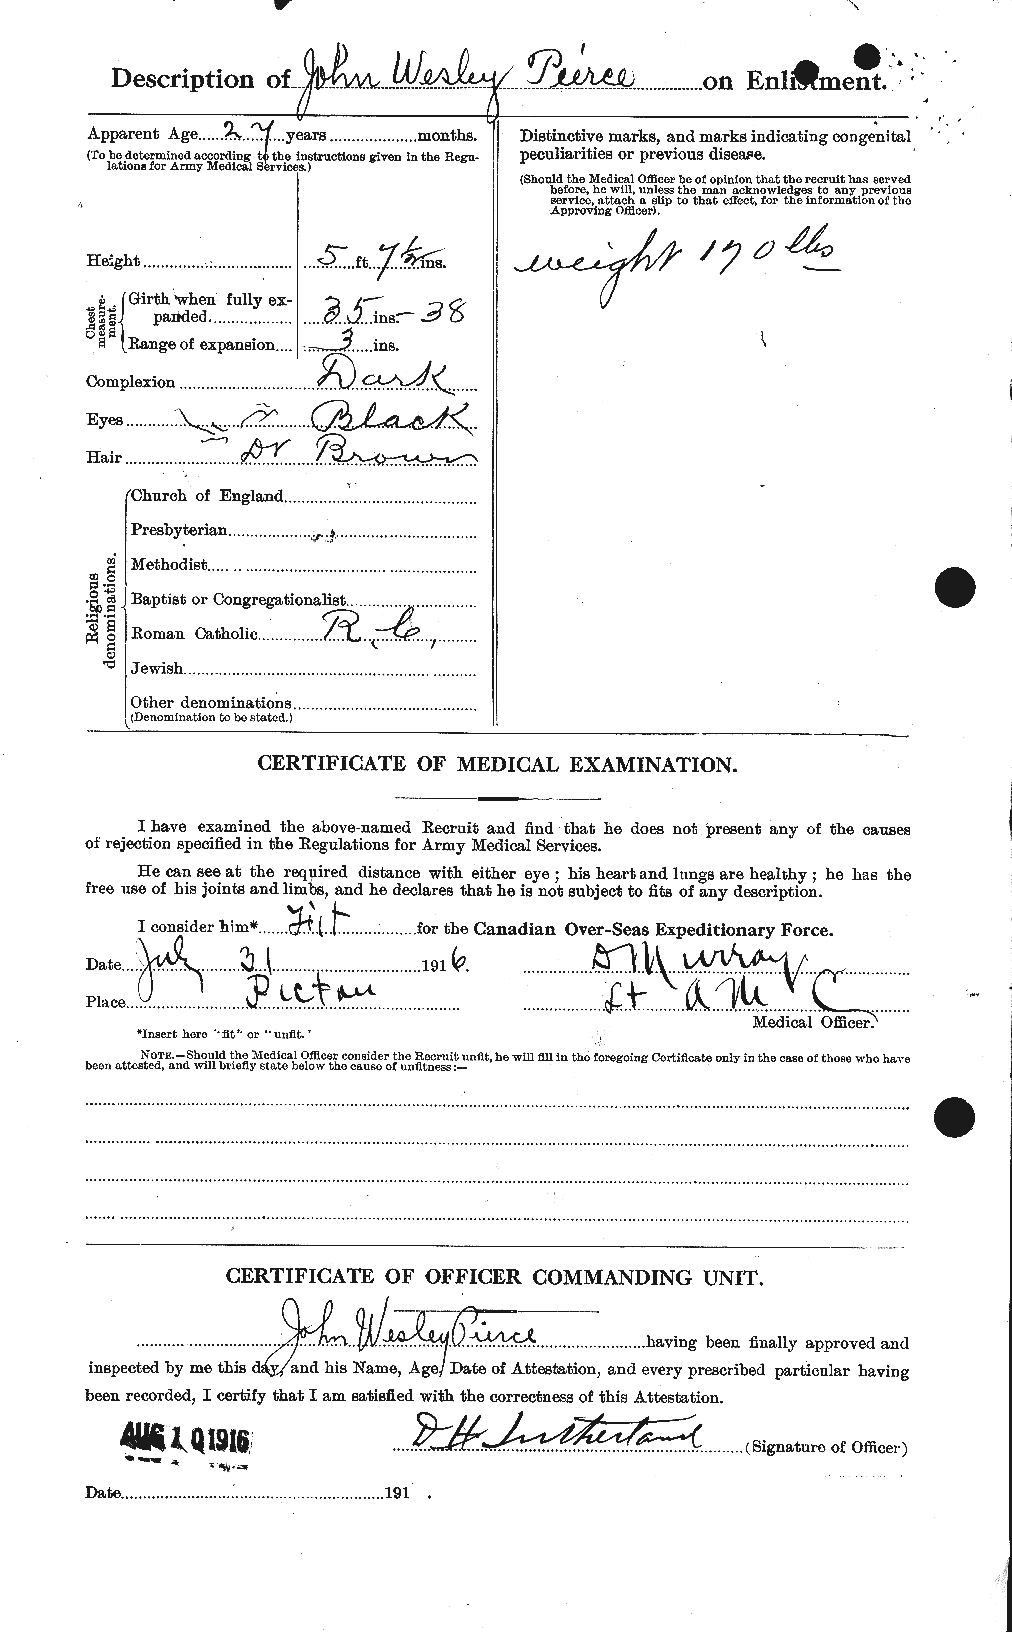 Dossiers du Personnel de la Première Guerre mondiale - CEC 580849b